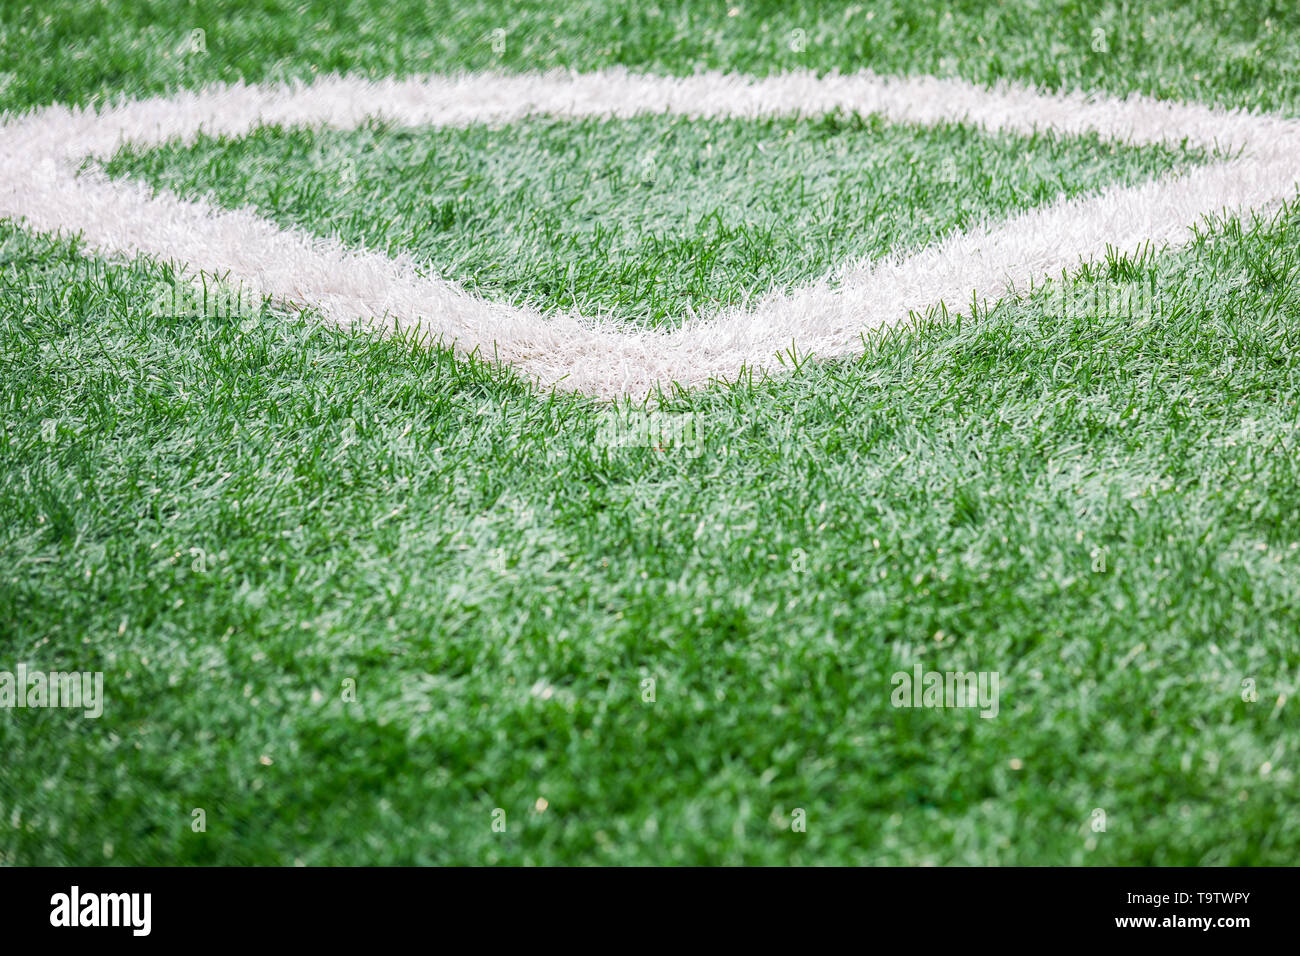 Chiusura del campo di calcio con la linea e erba , Sport e concetto di gioco Foto Stock